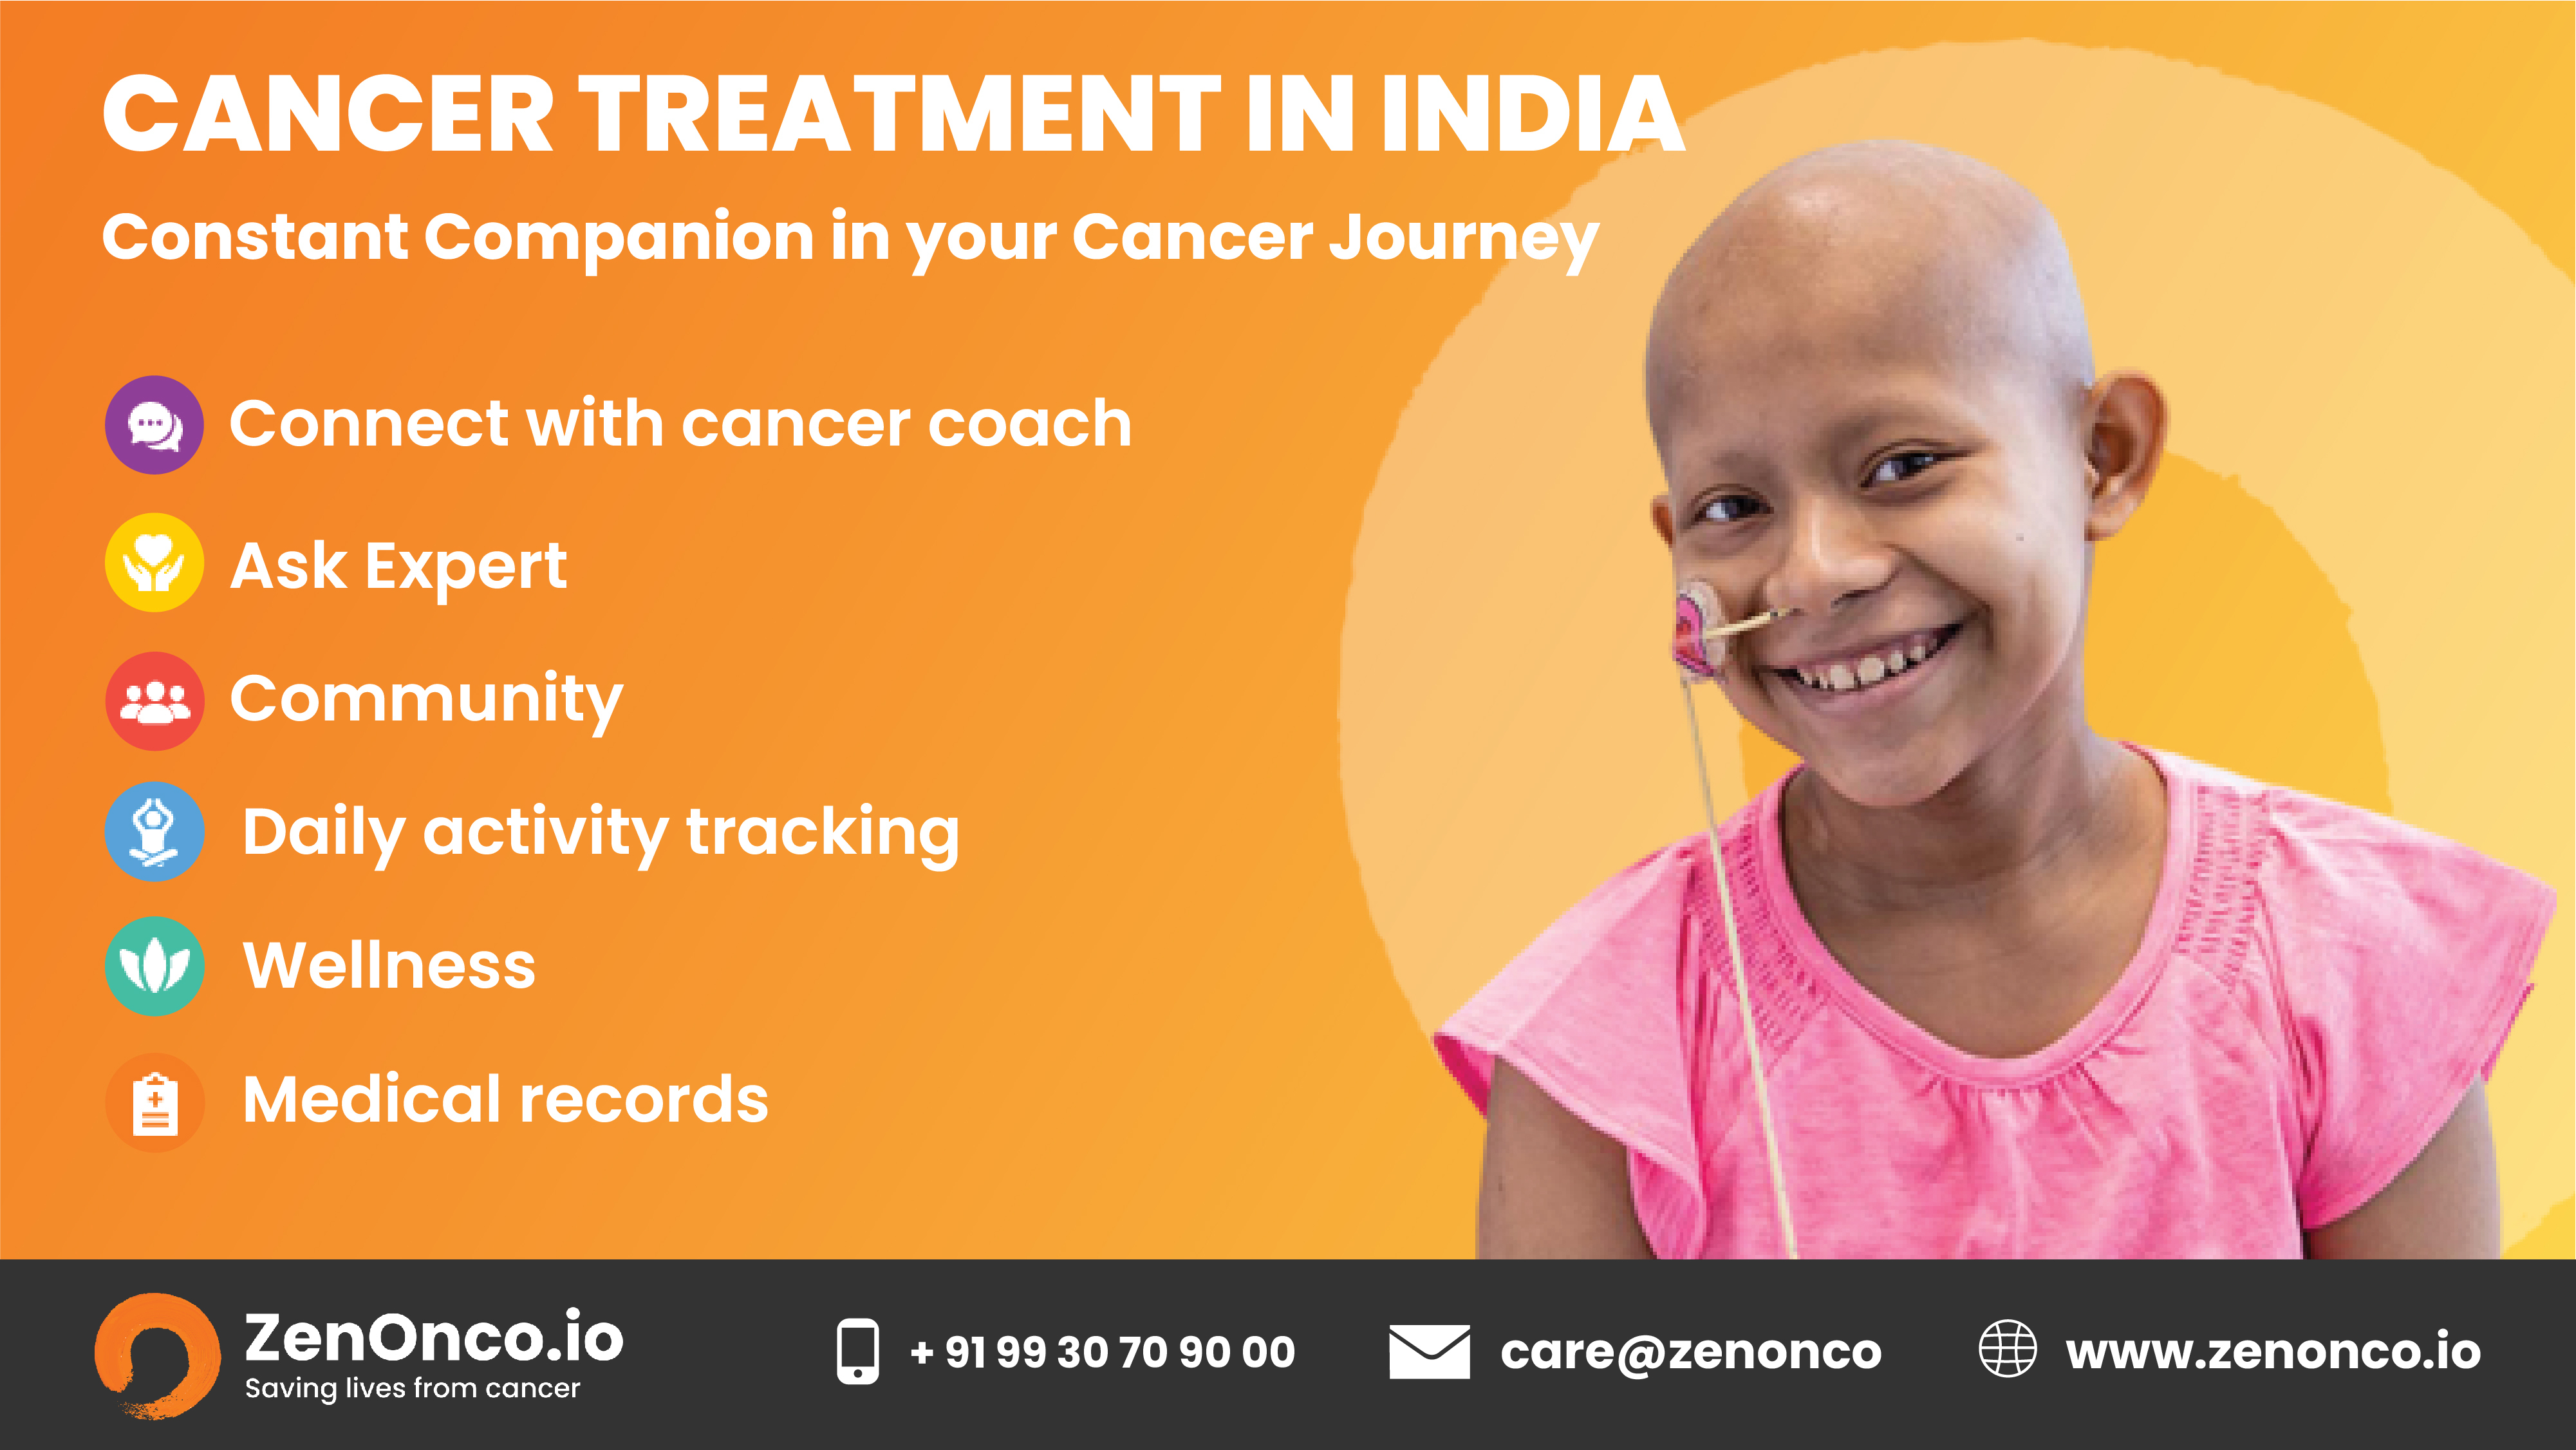 ZenOnco.io [J +919930709000 NF care@zenonco &H www.zenonco.io

Saving lives from cancer